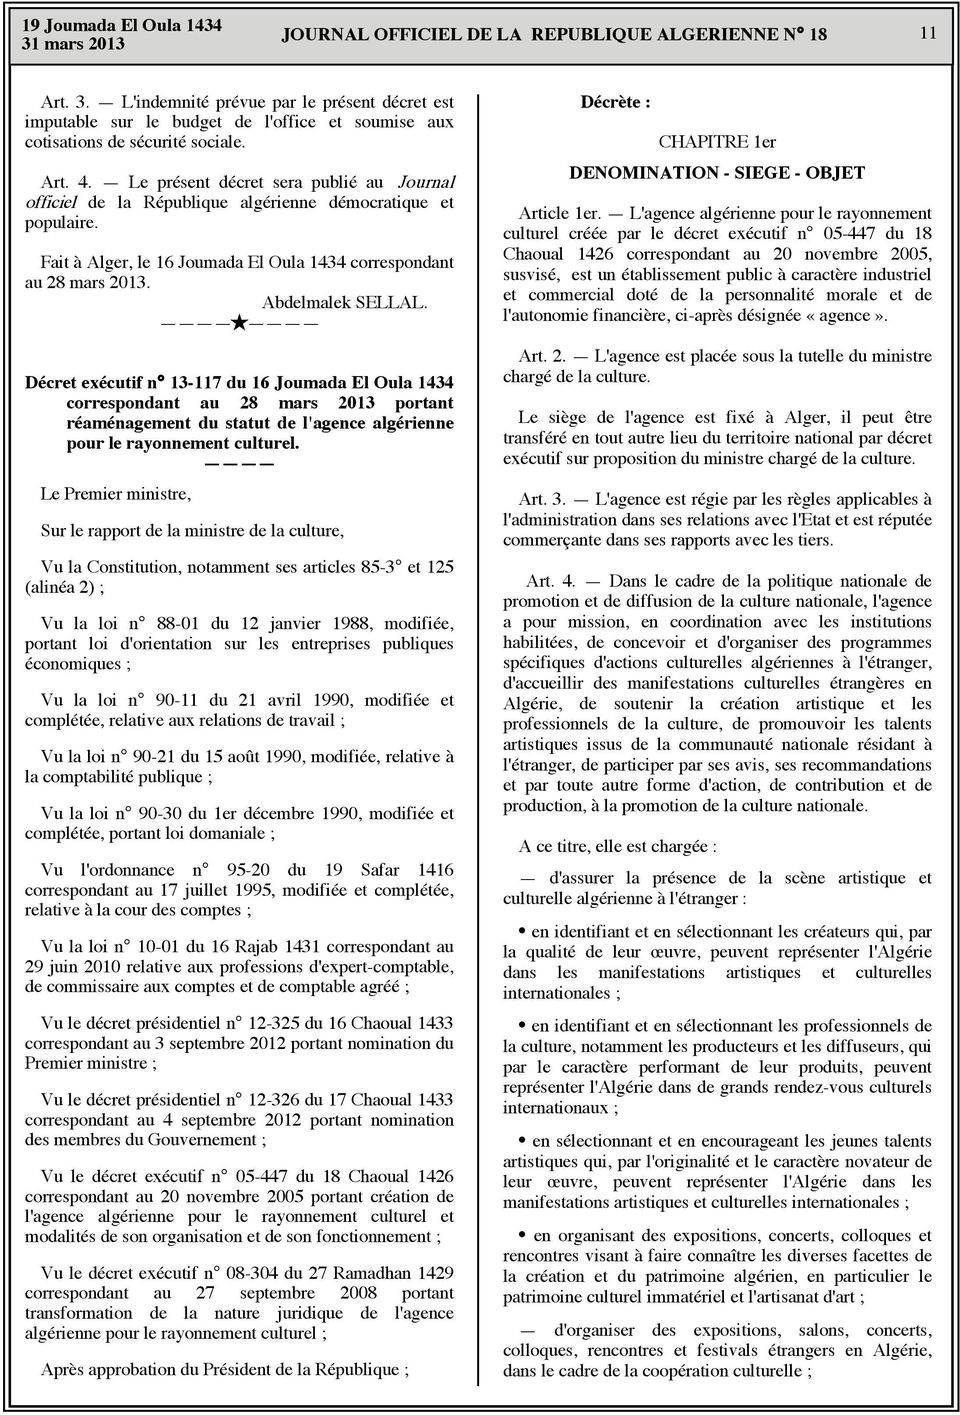 Abdelmalek SELLAL. Décret exécutif n 13-117 du 16 Joumada El Oula 1434 correspondant au 28 mars 23 portant réaménagement du statut de l'agence algérienne pour le rayonnement culturel.